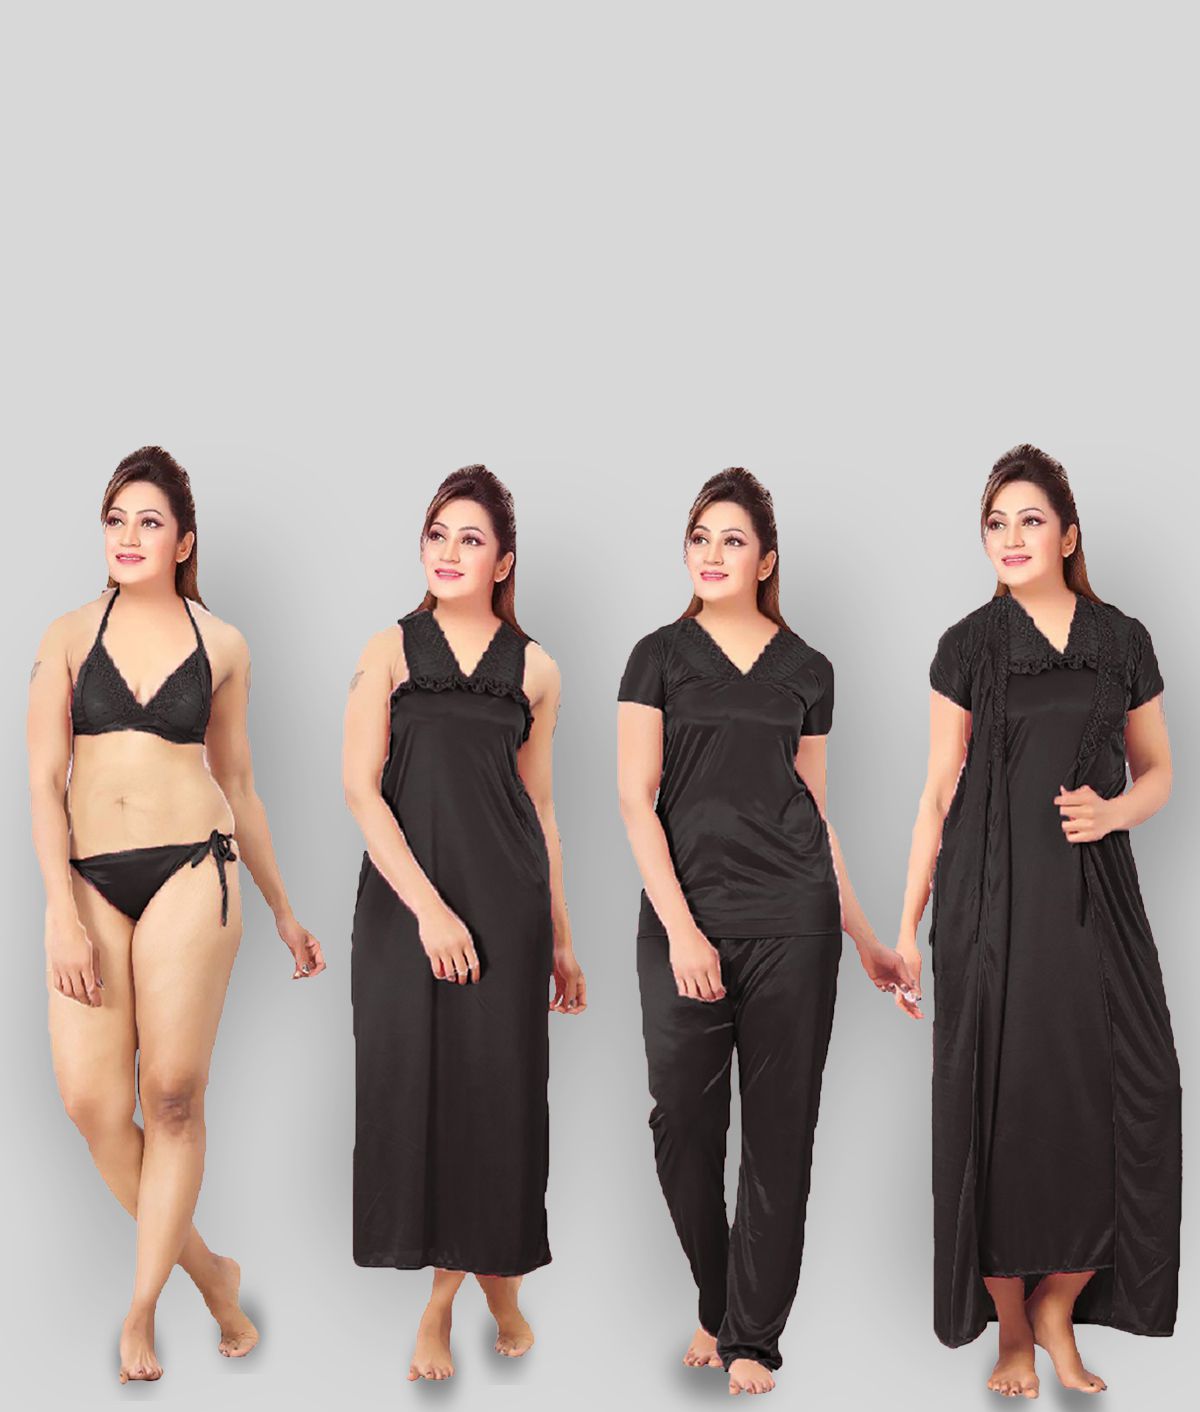     			Romaisa - Black Satin Women's Nightwear Nighty & Night Gowns ( Pack of 6 )